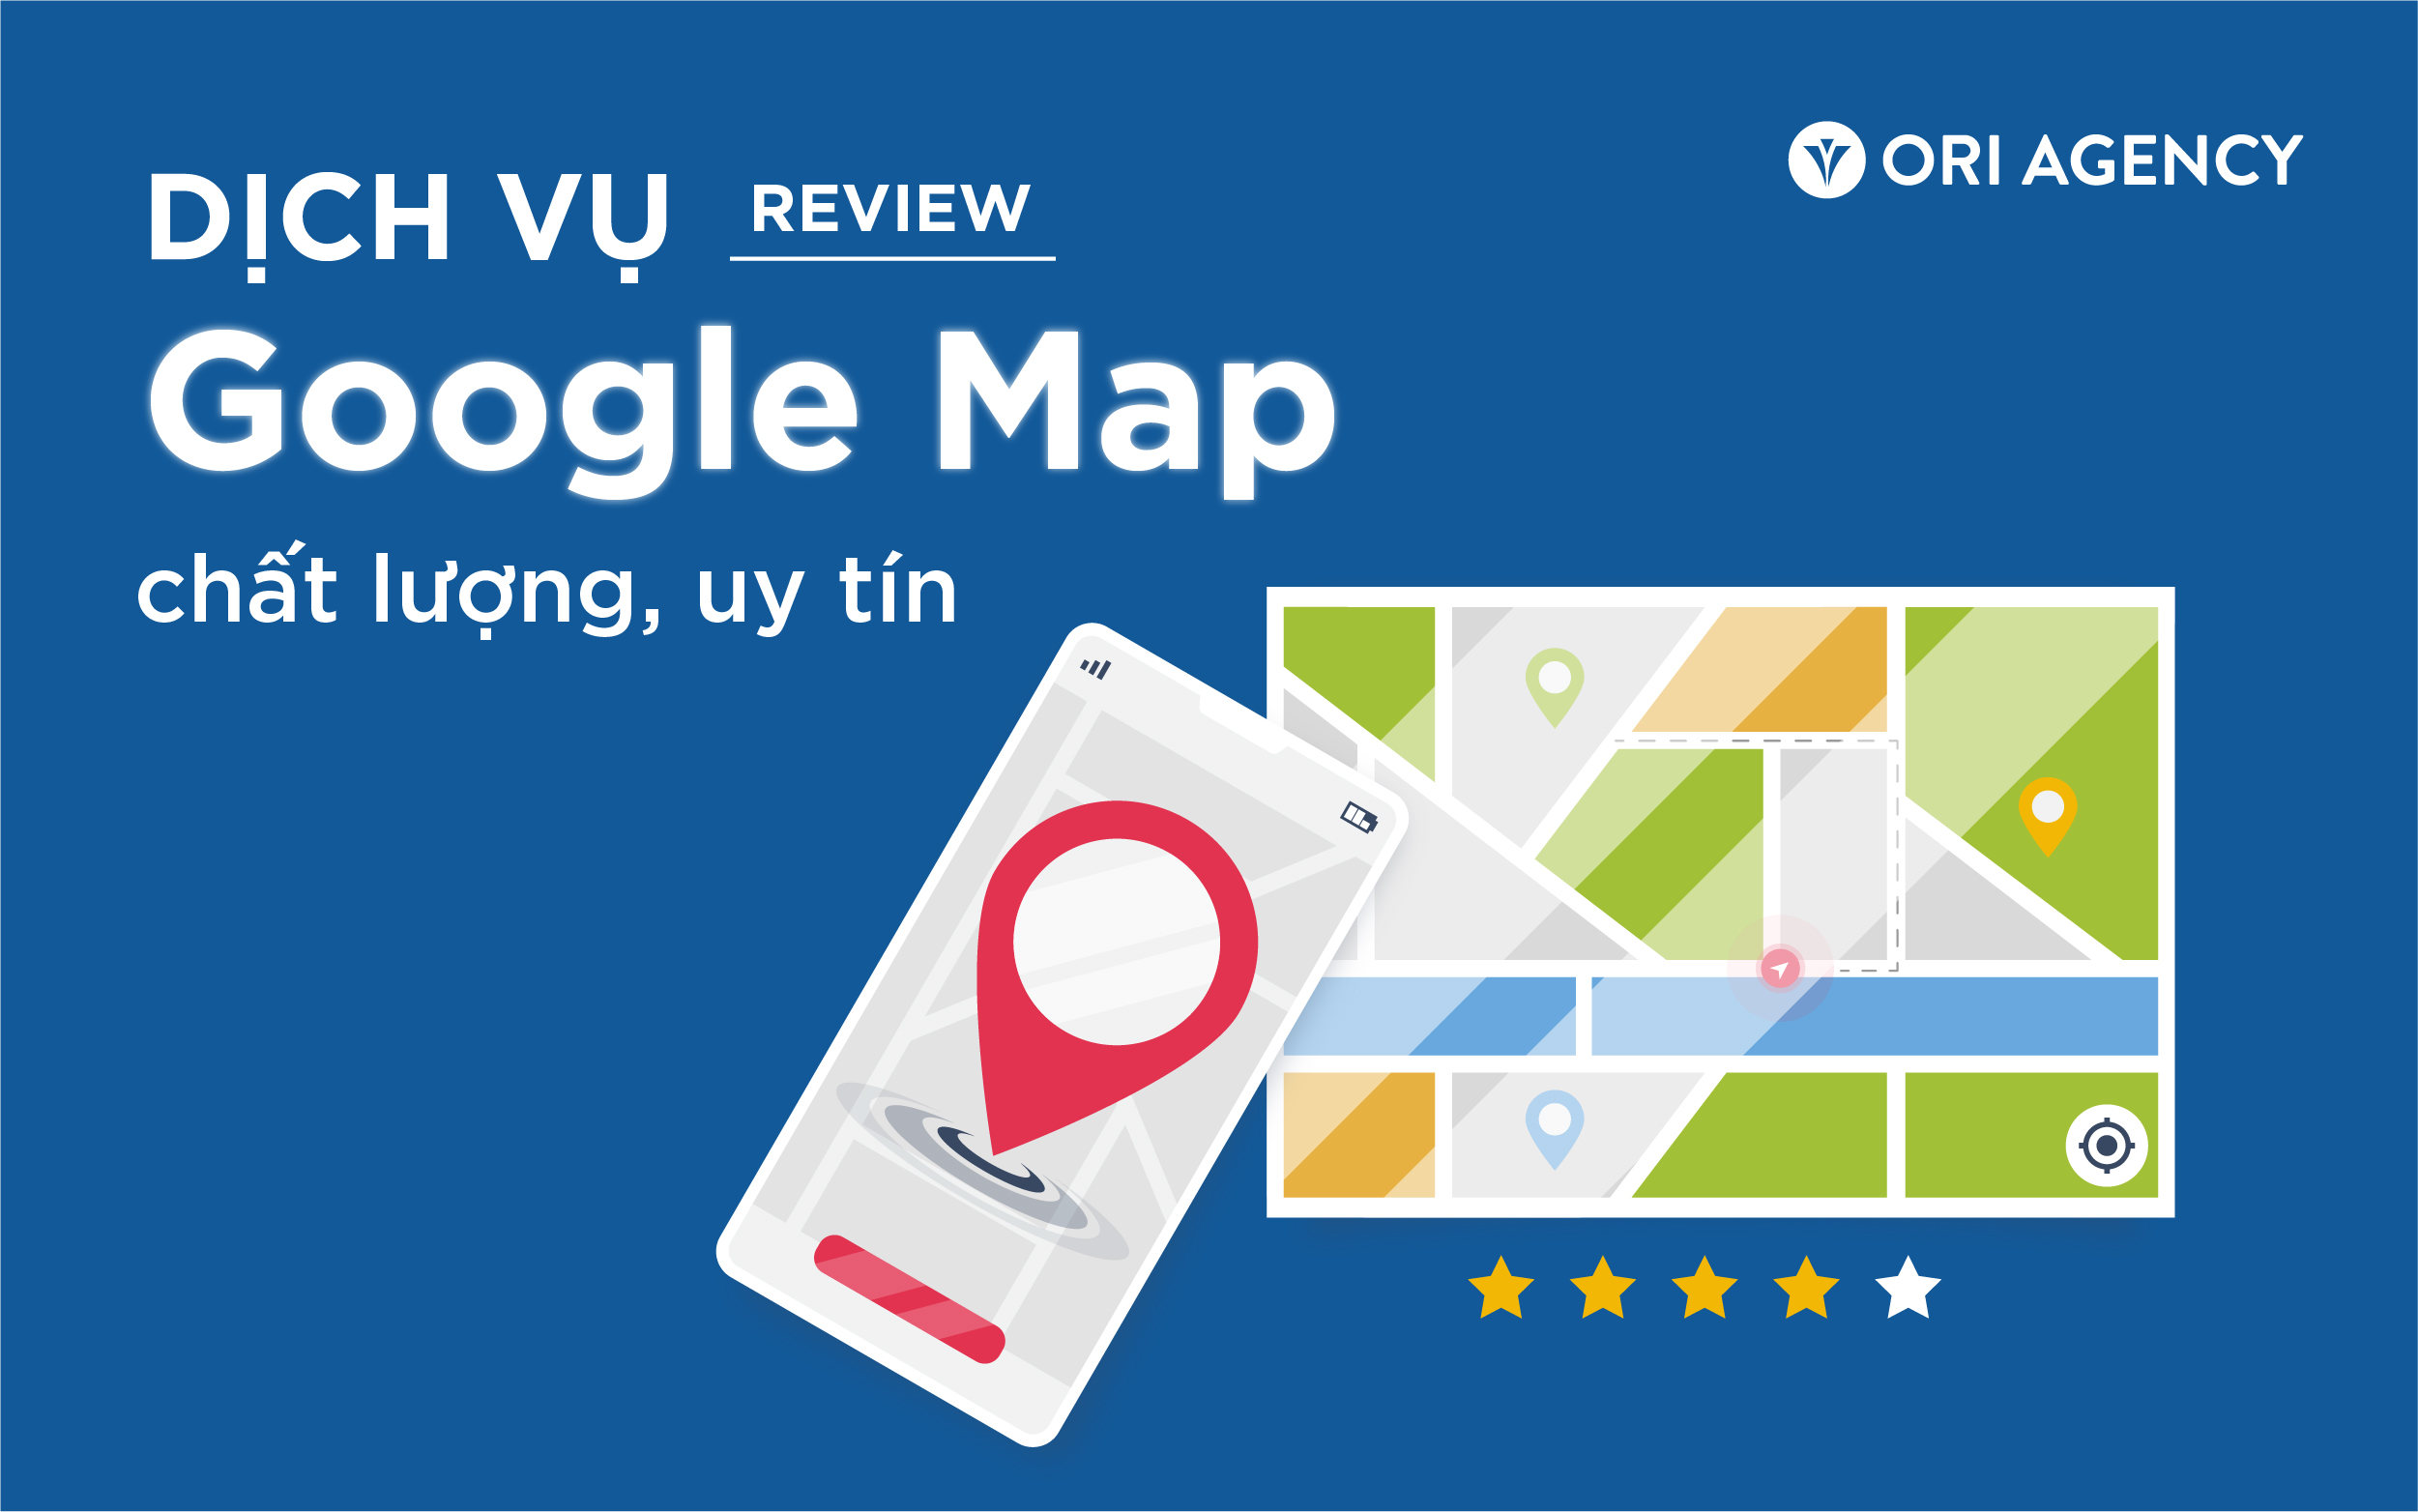 Dịch vụ review Google Map chất lượng, uy tín